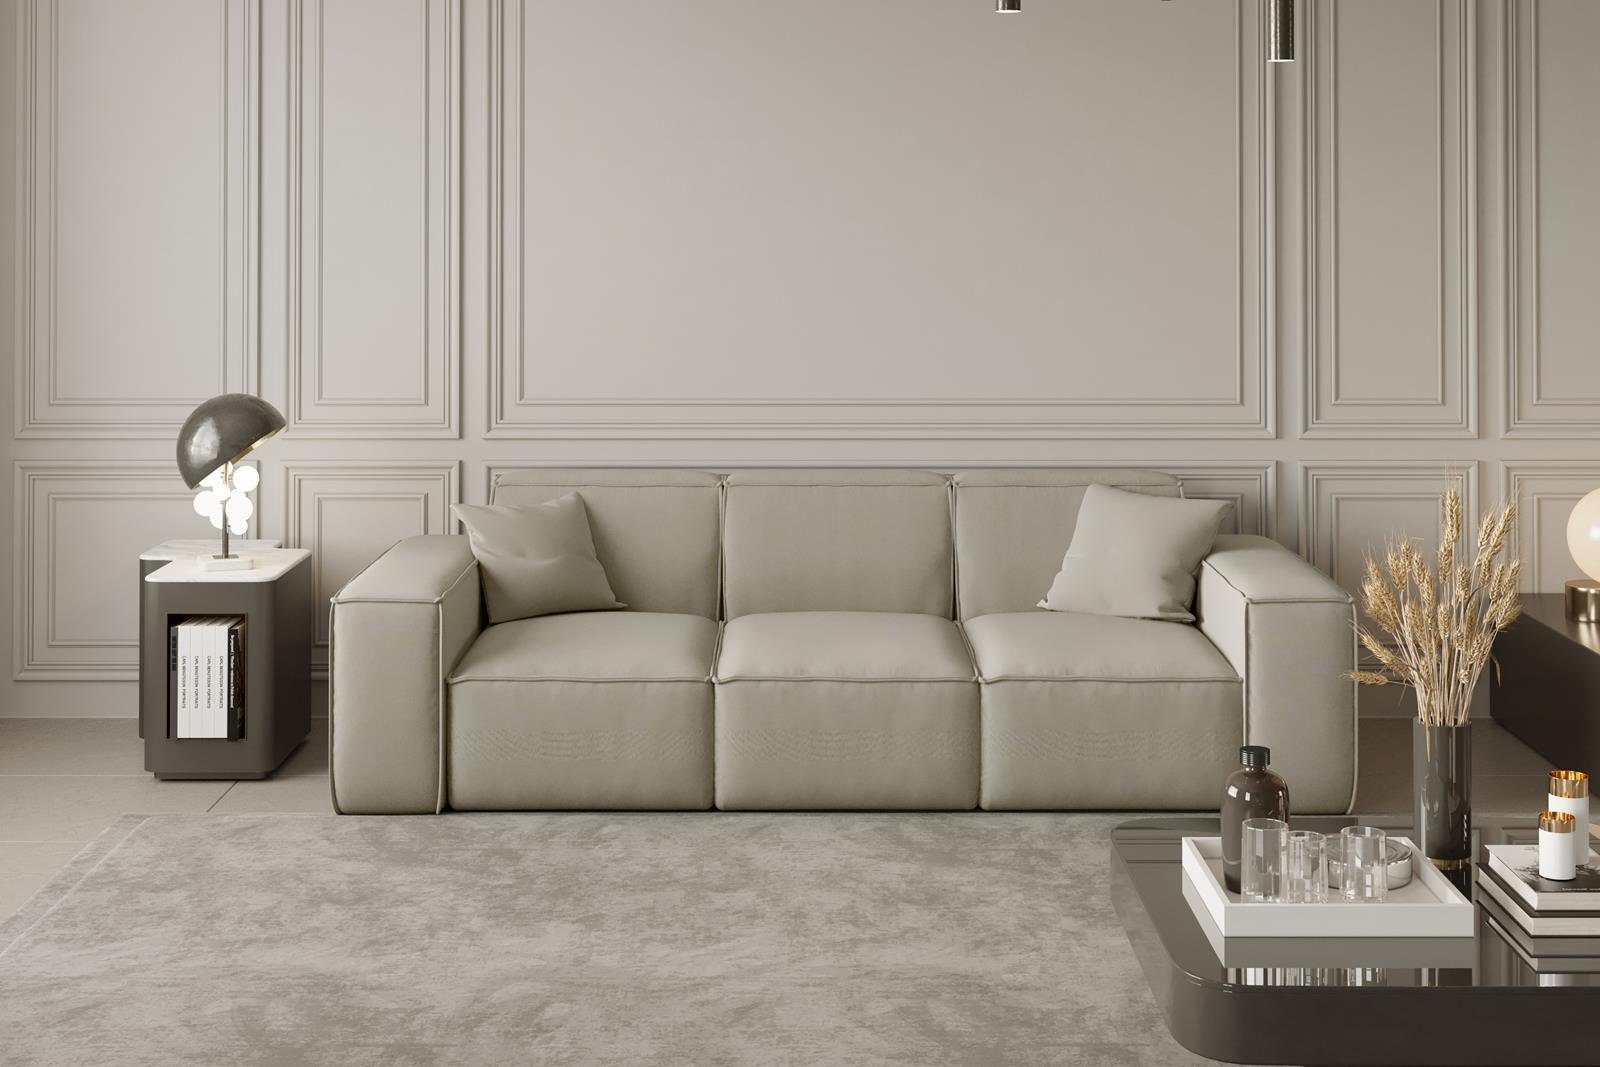 Beautysofa Sofa Lugano, 3-Sitzer Sofa aus Cordstoff oder Veloursstoff, Dreisitzer im modernes Stil, inklusive Wellenfedern